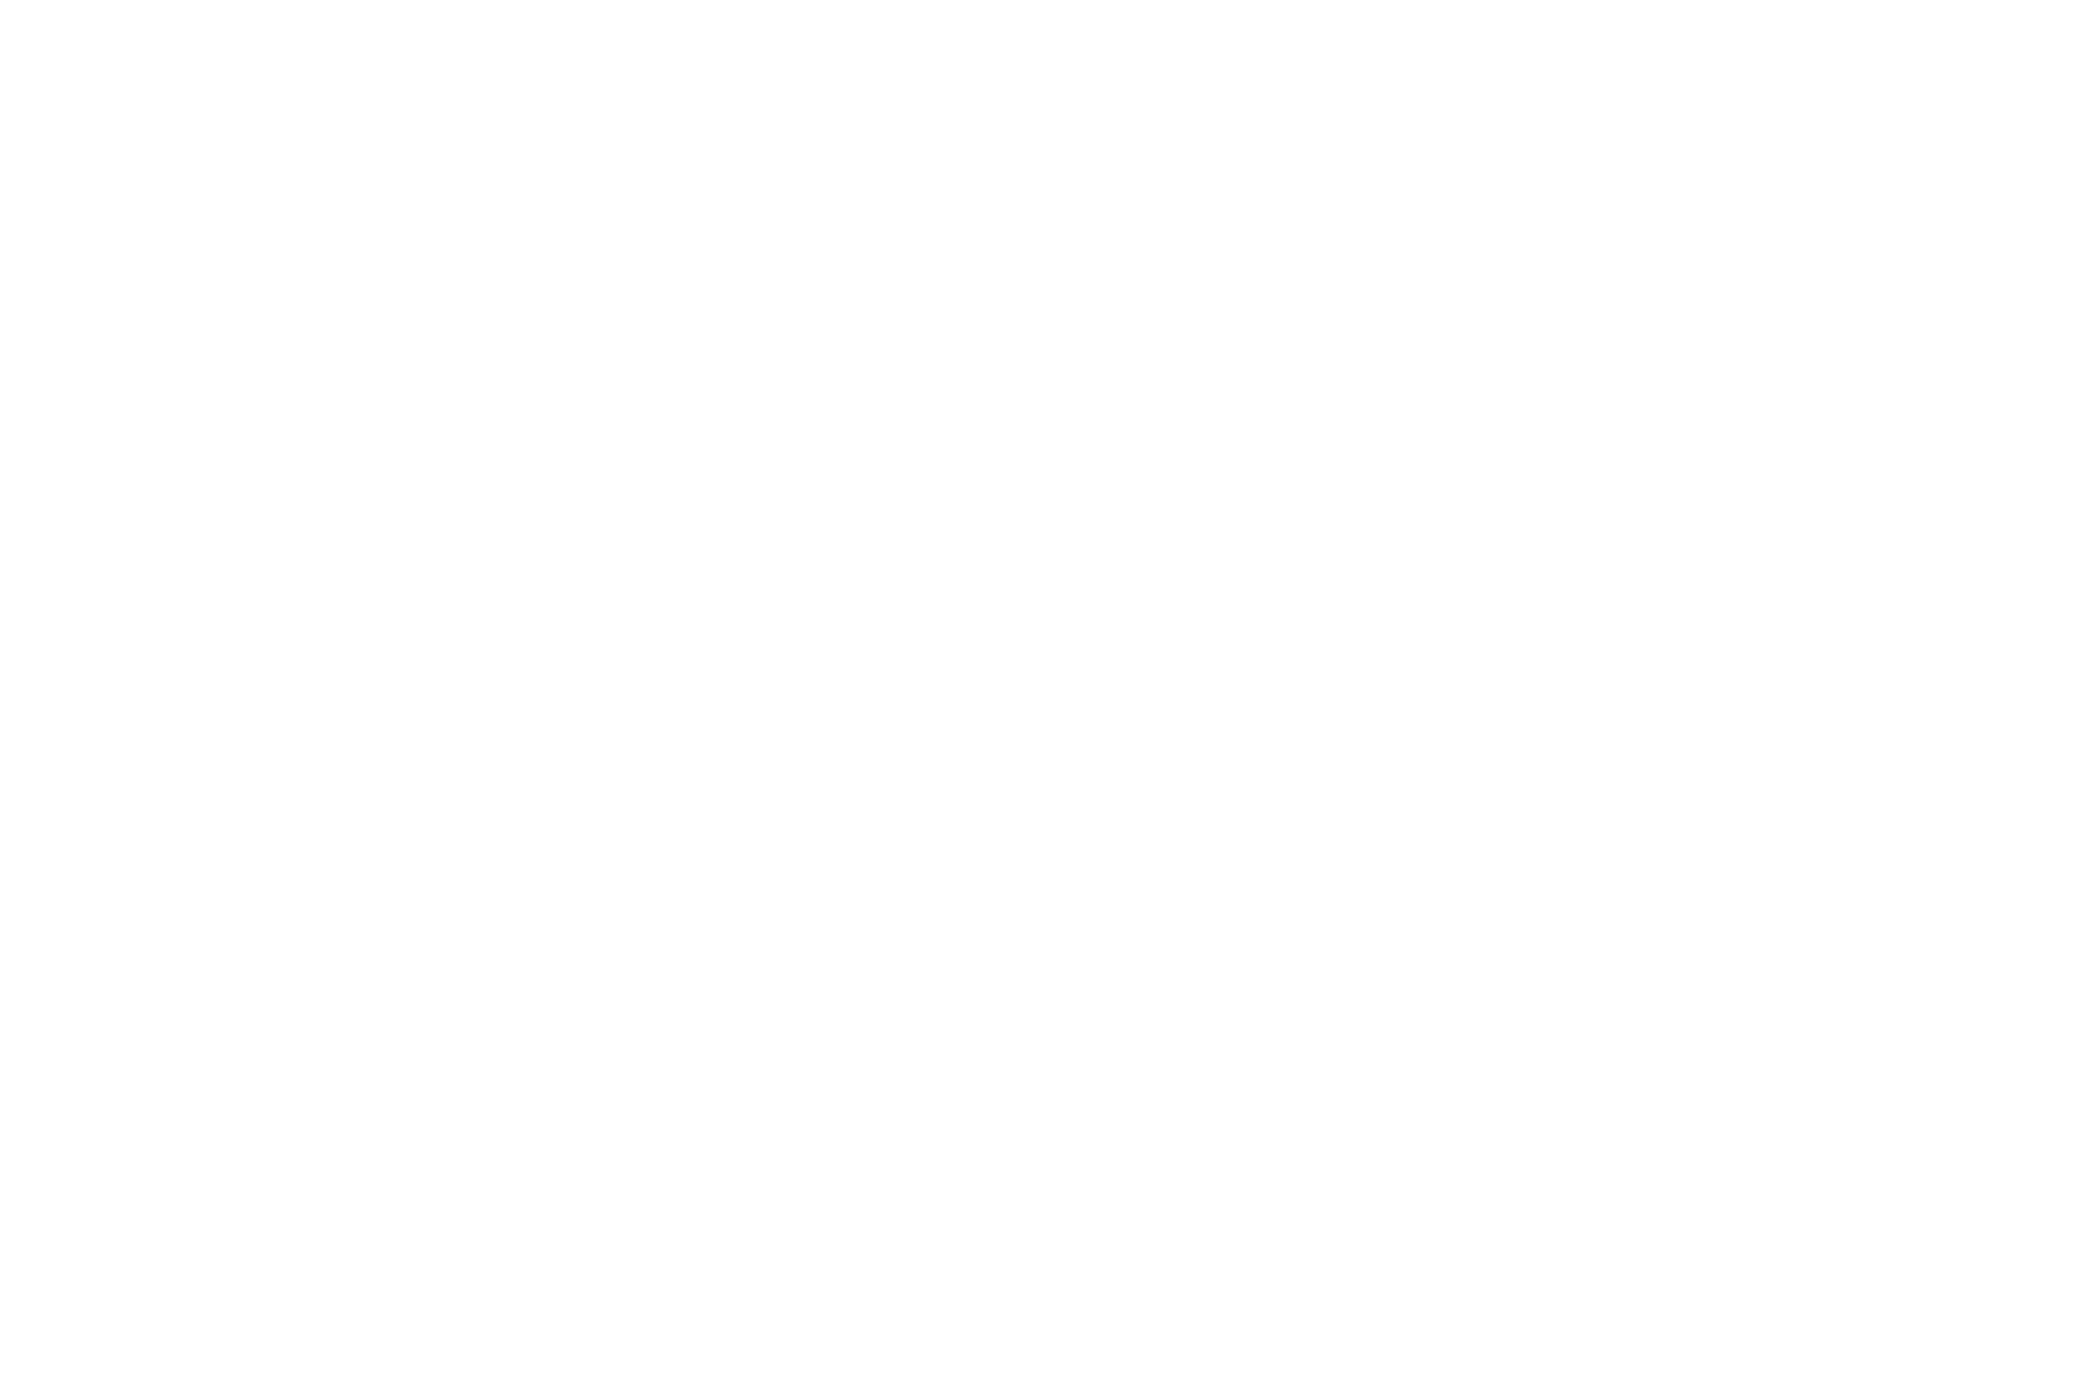 Rego Realty